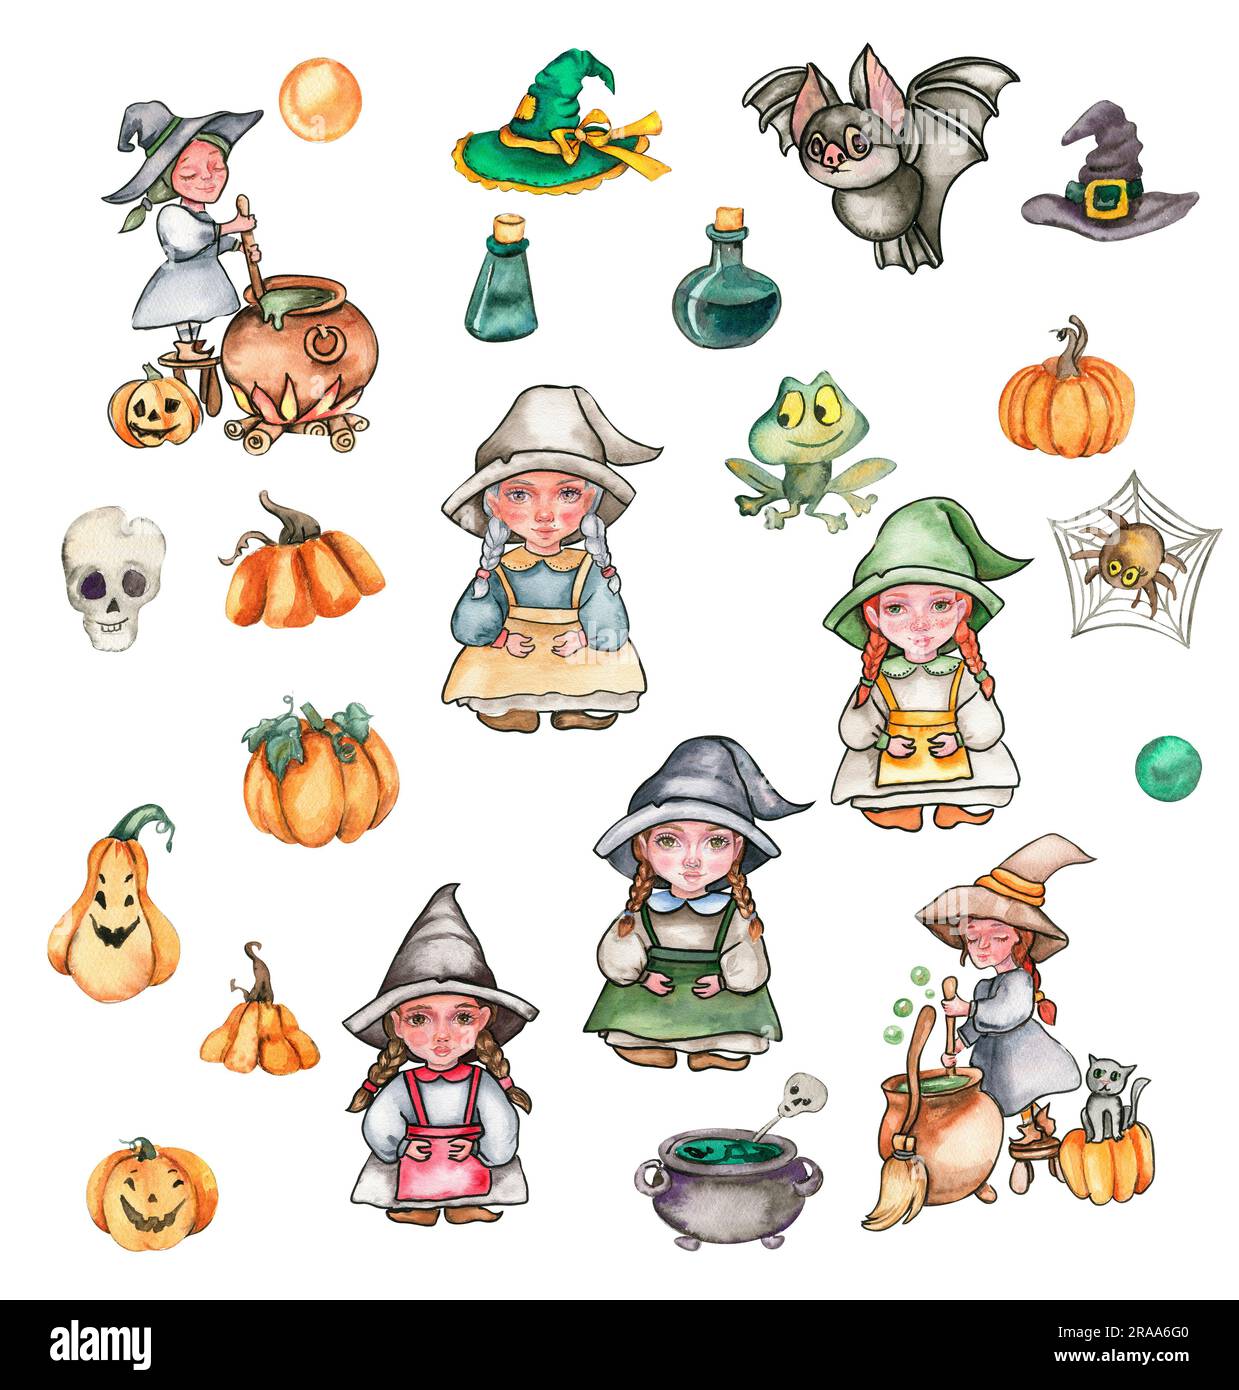 Eine kleine Hexe mit Hut, Kürbisse, Schädel, Frosch. Handgezeichnete Aquarell-Illustration. Kann für halloween-Partys oder Poster verwendet werden. Stockfoto